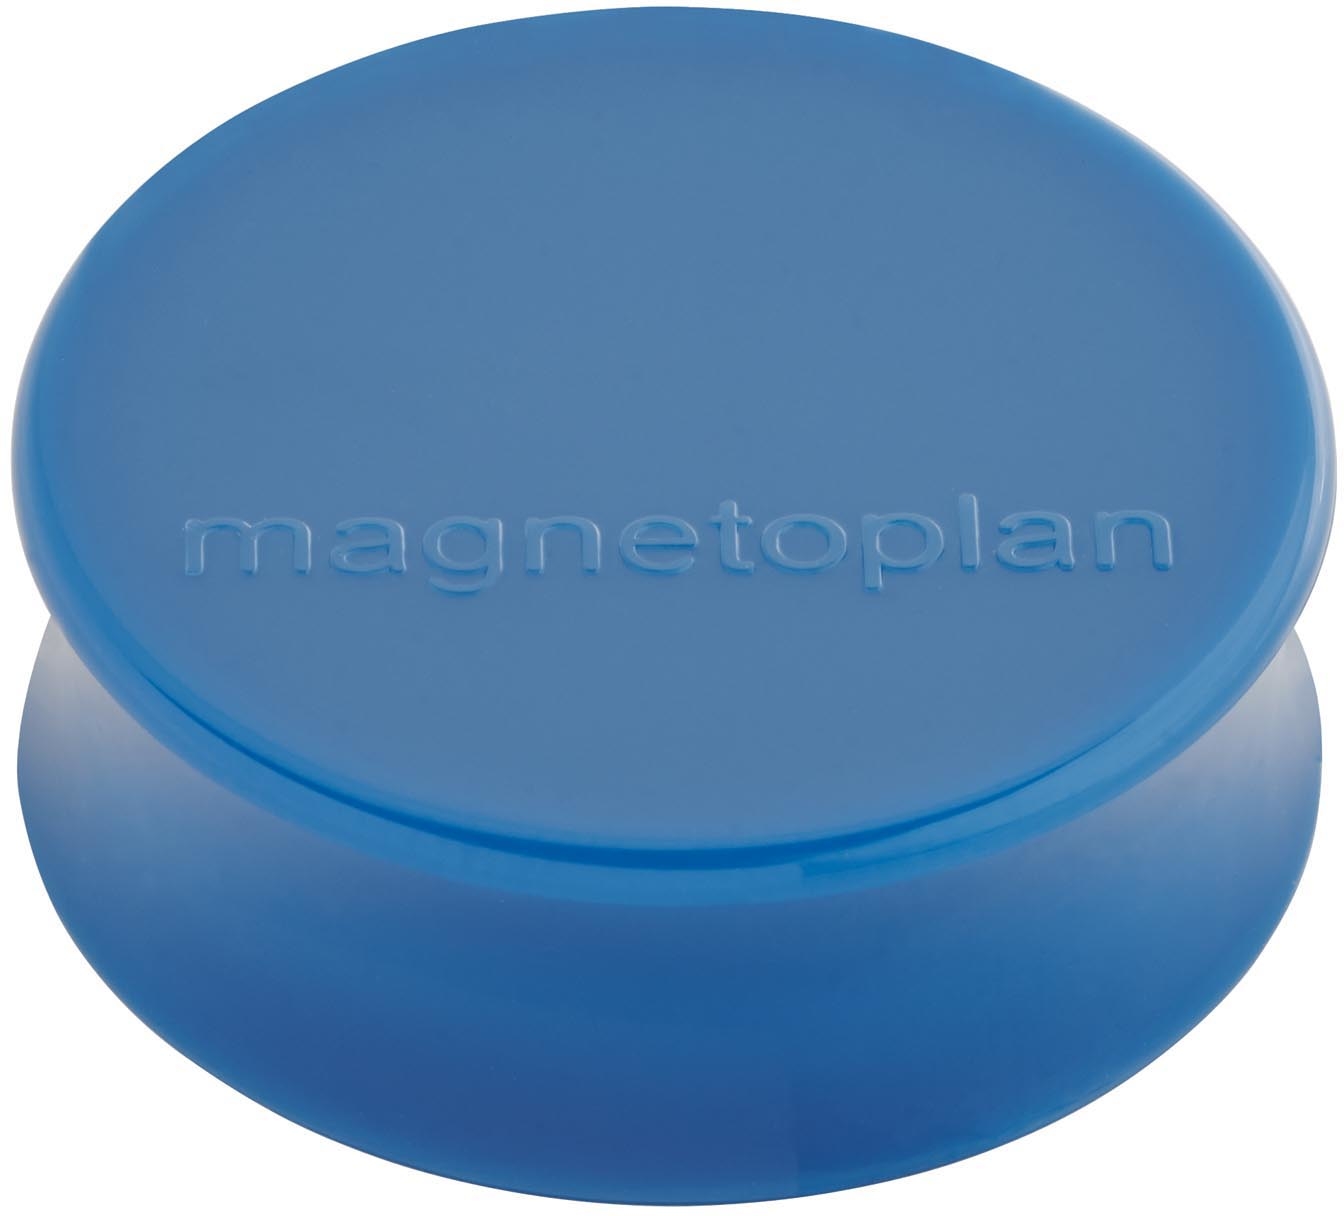 MAGNETOPLAN Aimant Ergo Large 10 pcs. 1665014 bleu foncé 34mm